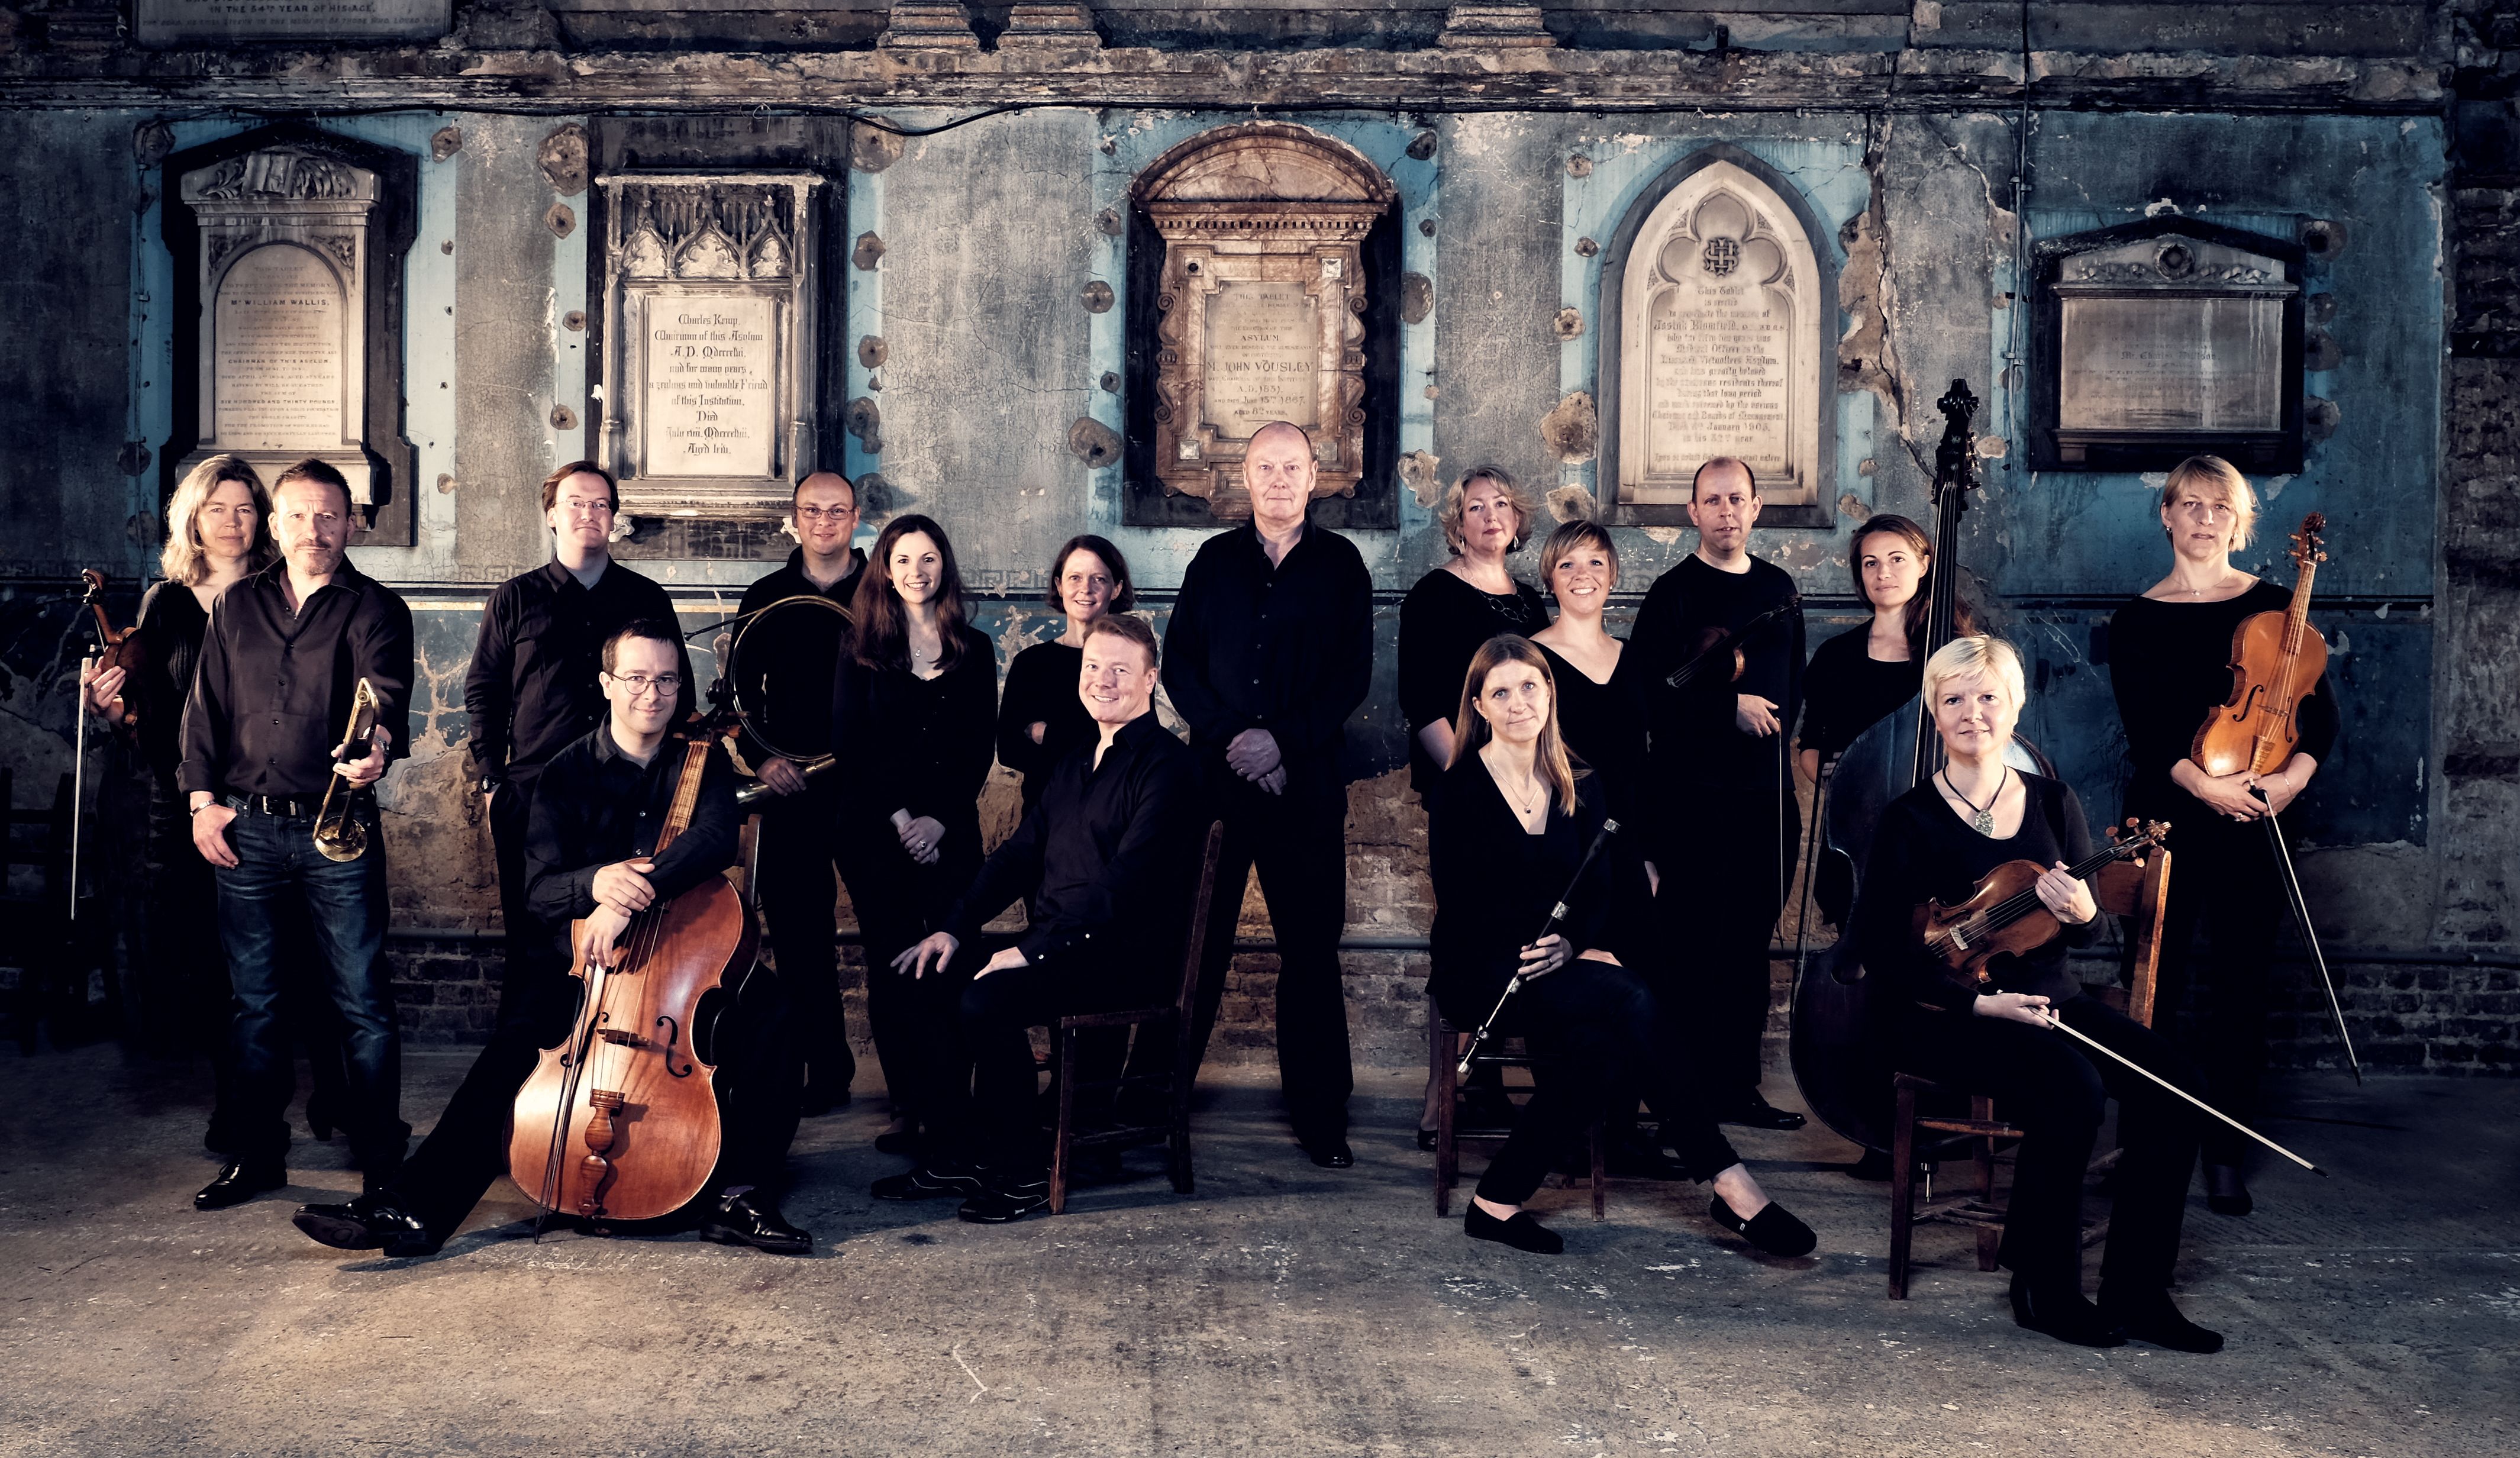 Paul McCreesh i la formació Gabrieli Consort & Players interpretaran la 'Passió segons sant Mateu' de Bach al Palau de la Música